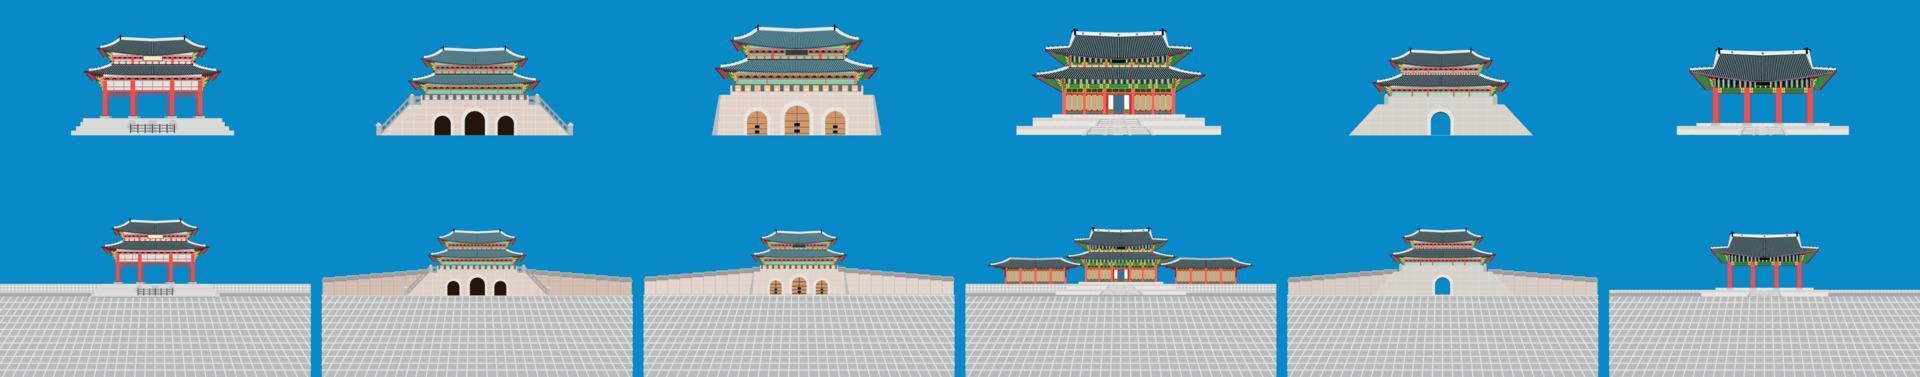 conjunto de palacio favorito de corea del sur. ilustración vectorial eps10 vector